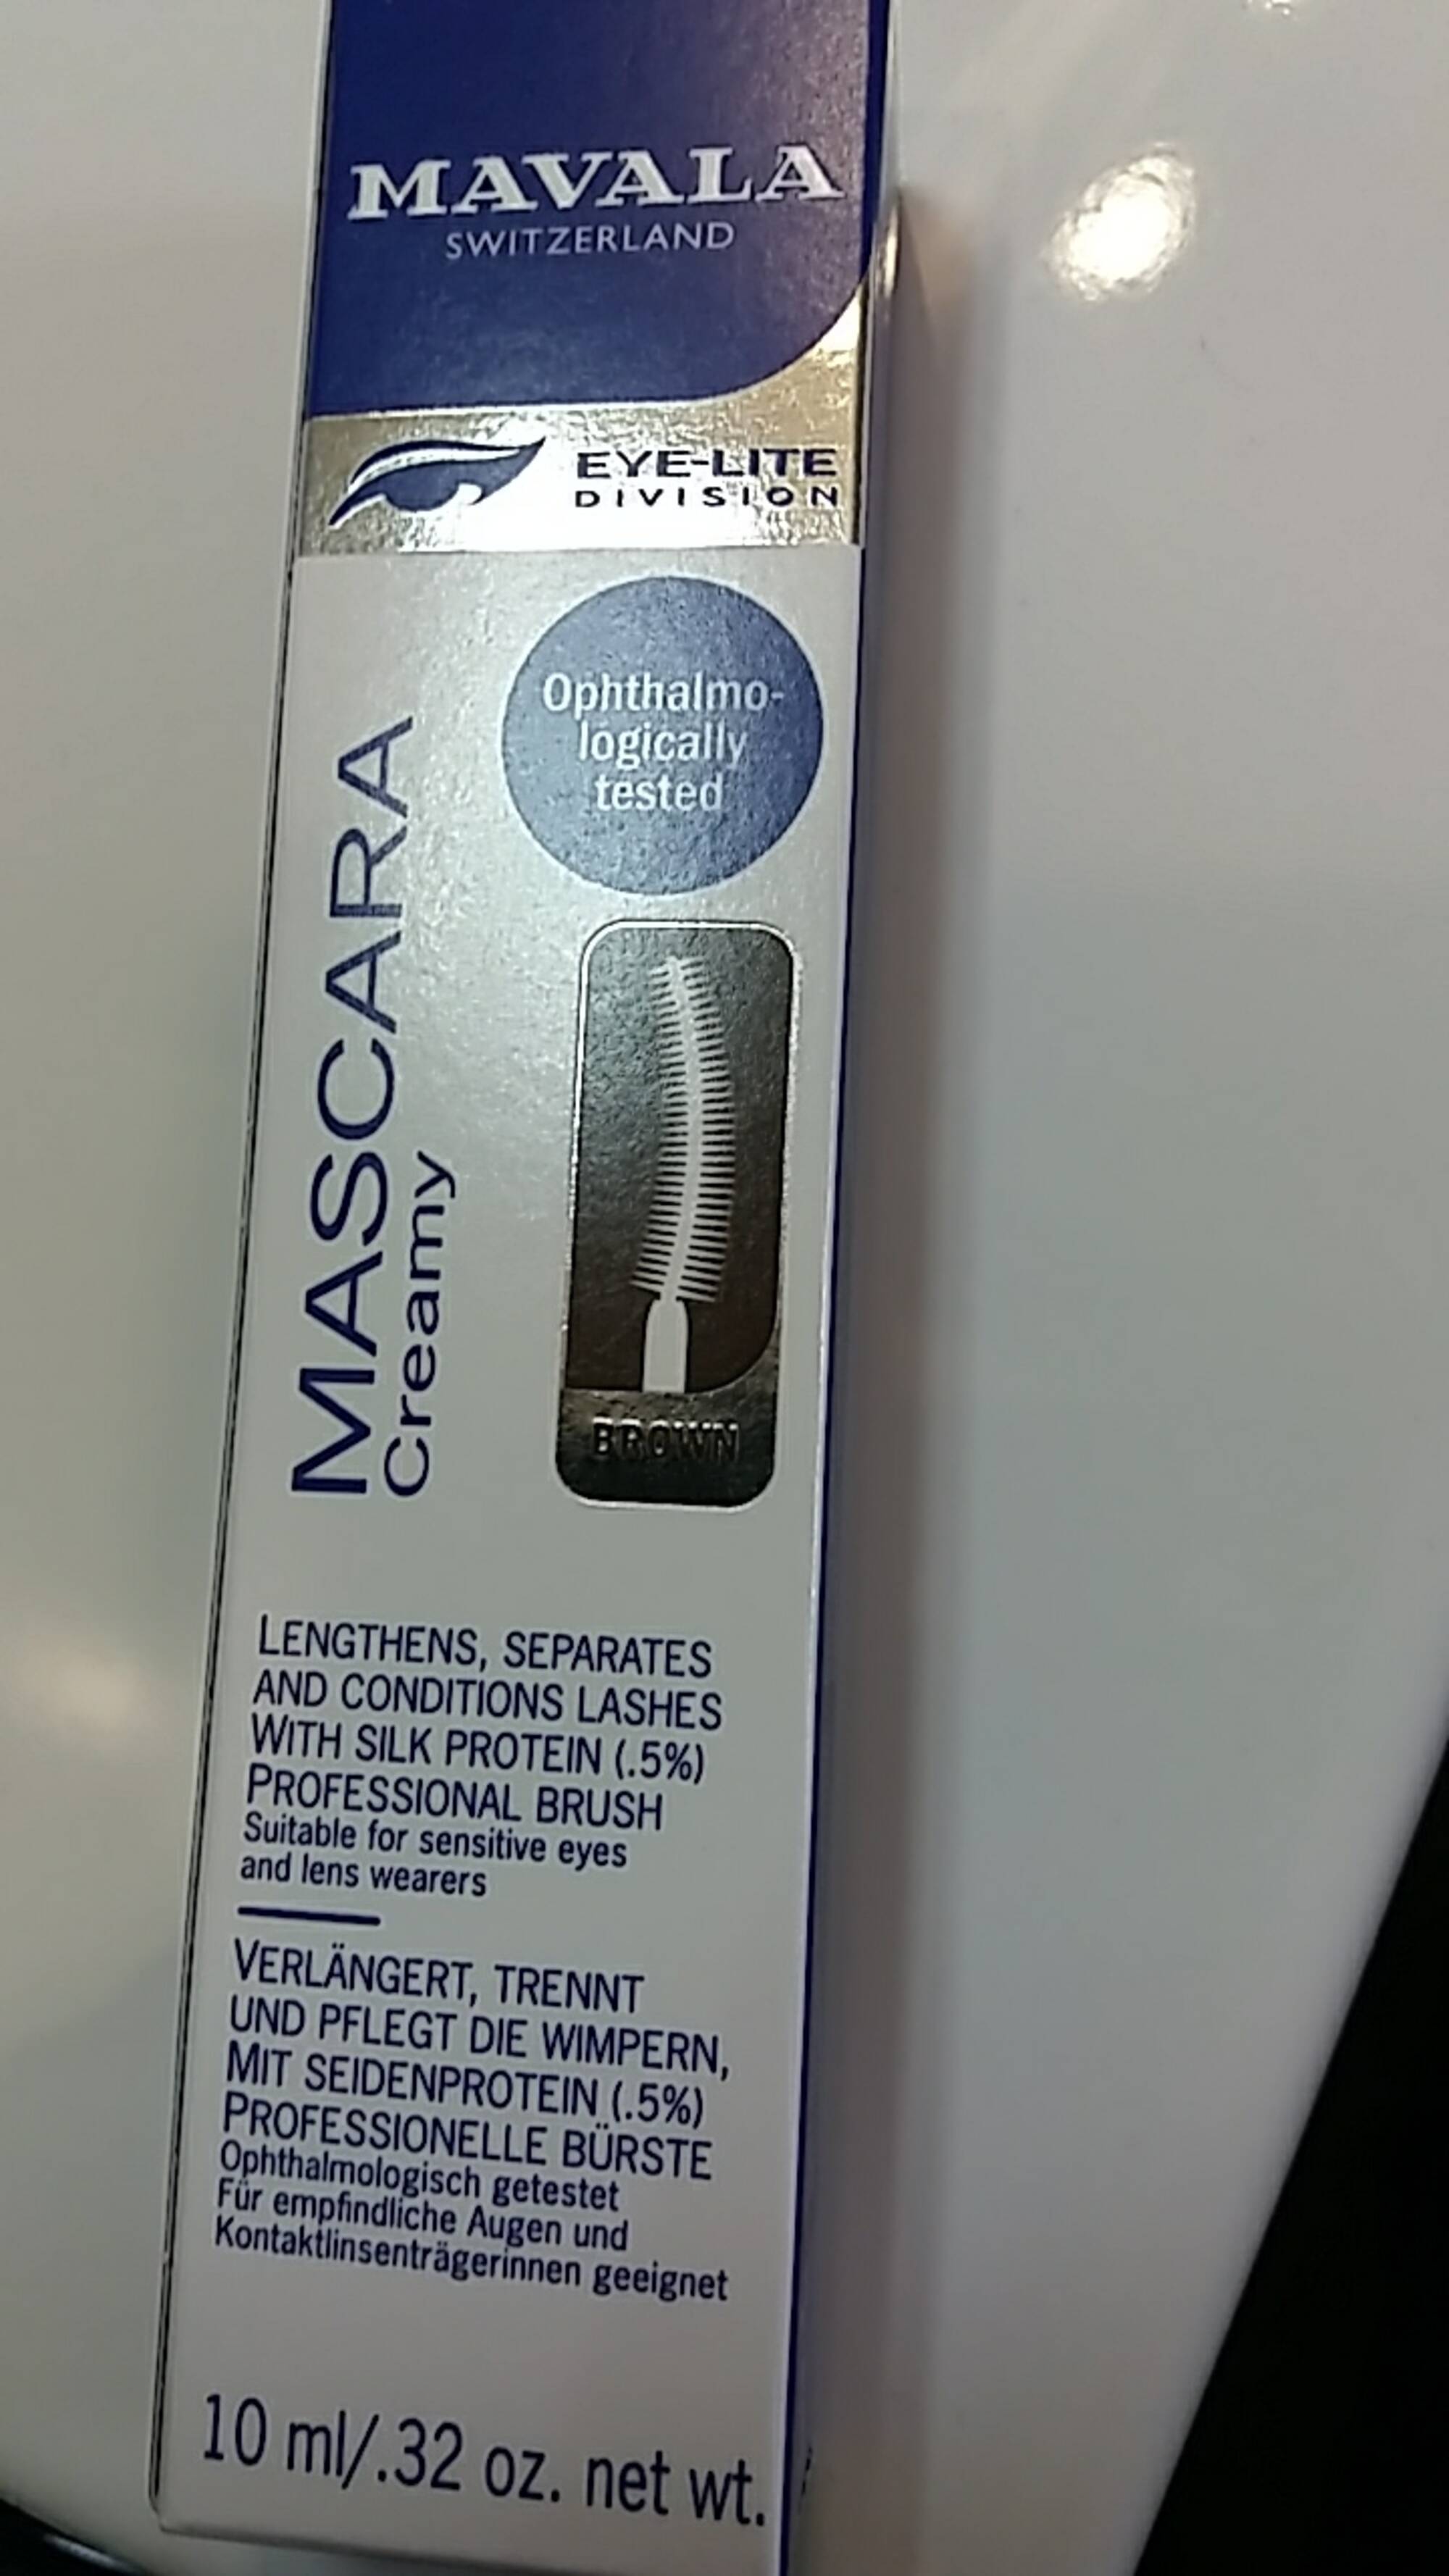 MAVALA - Mascara creamy